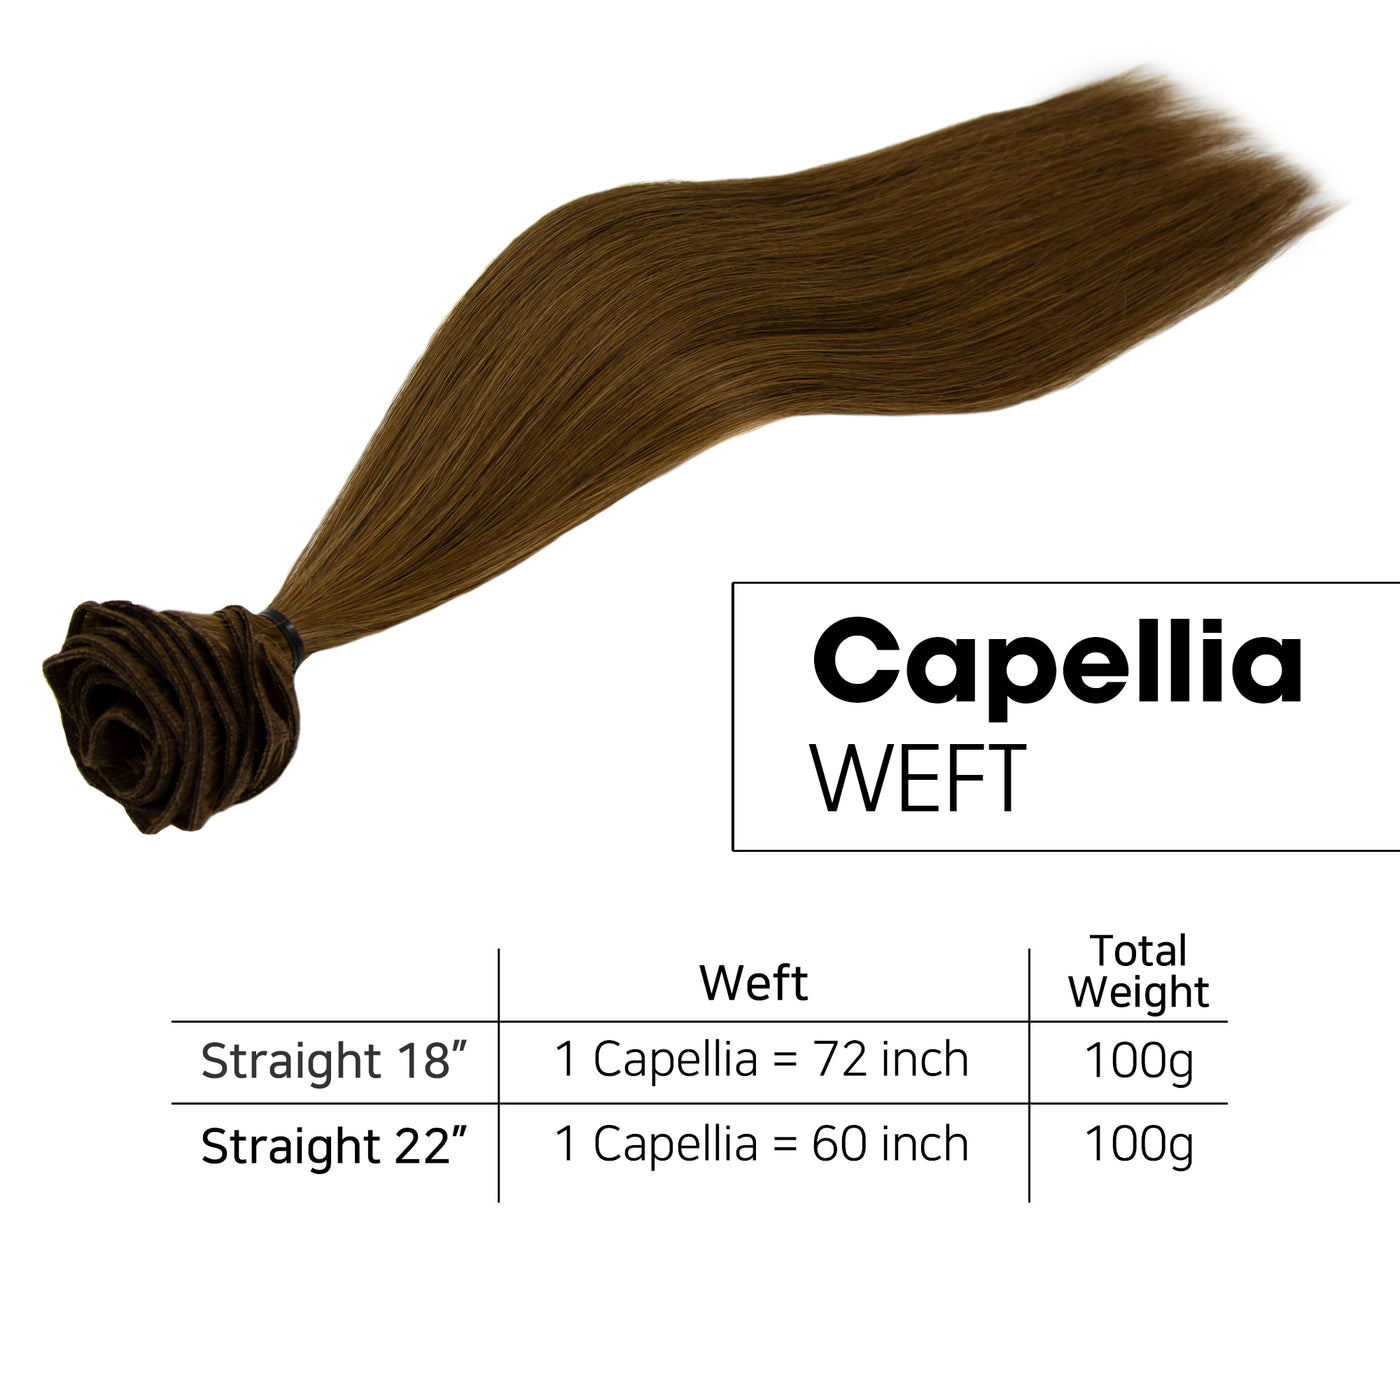 CAPELLIA WEFT